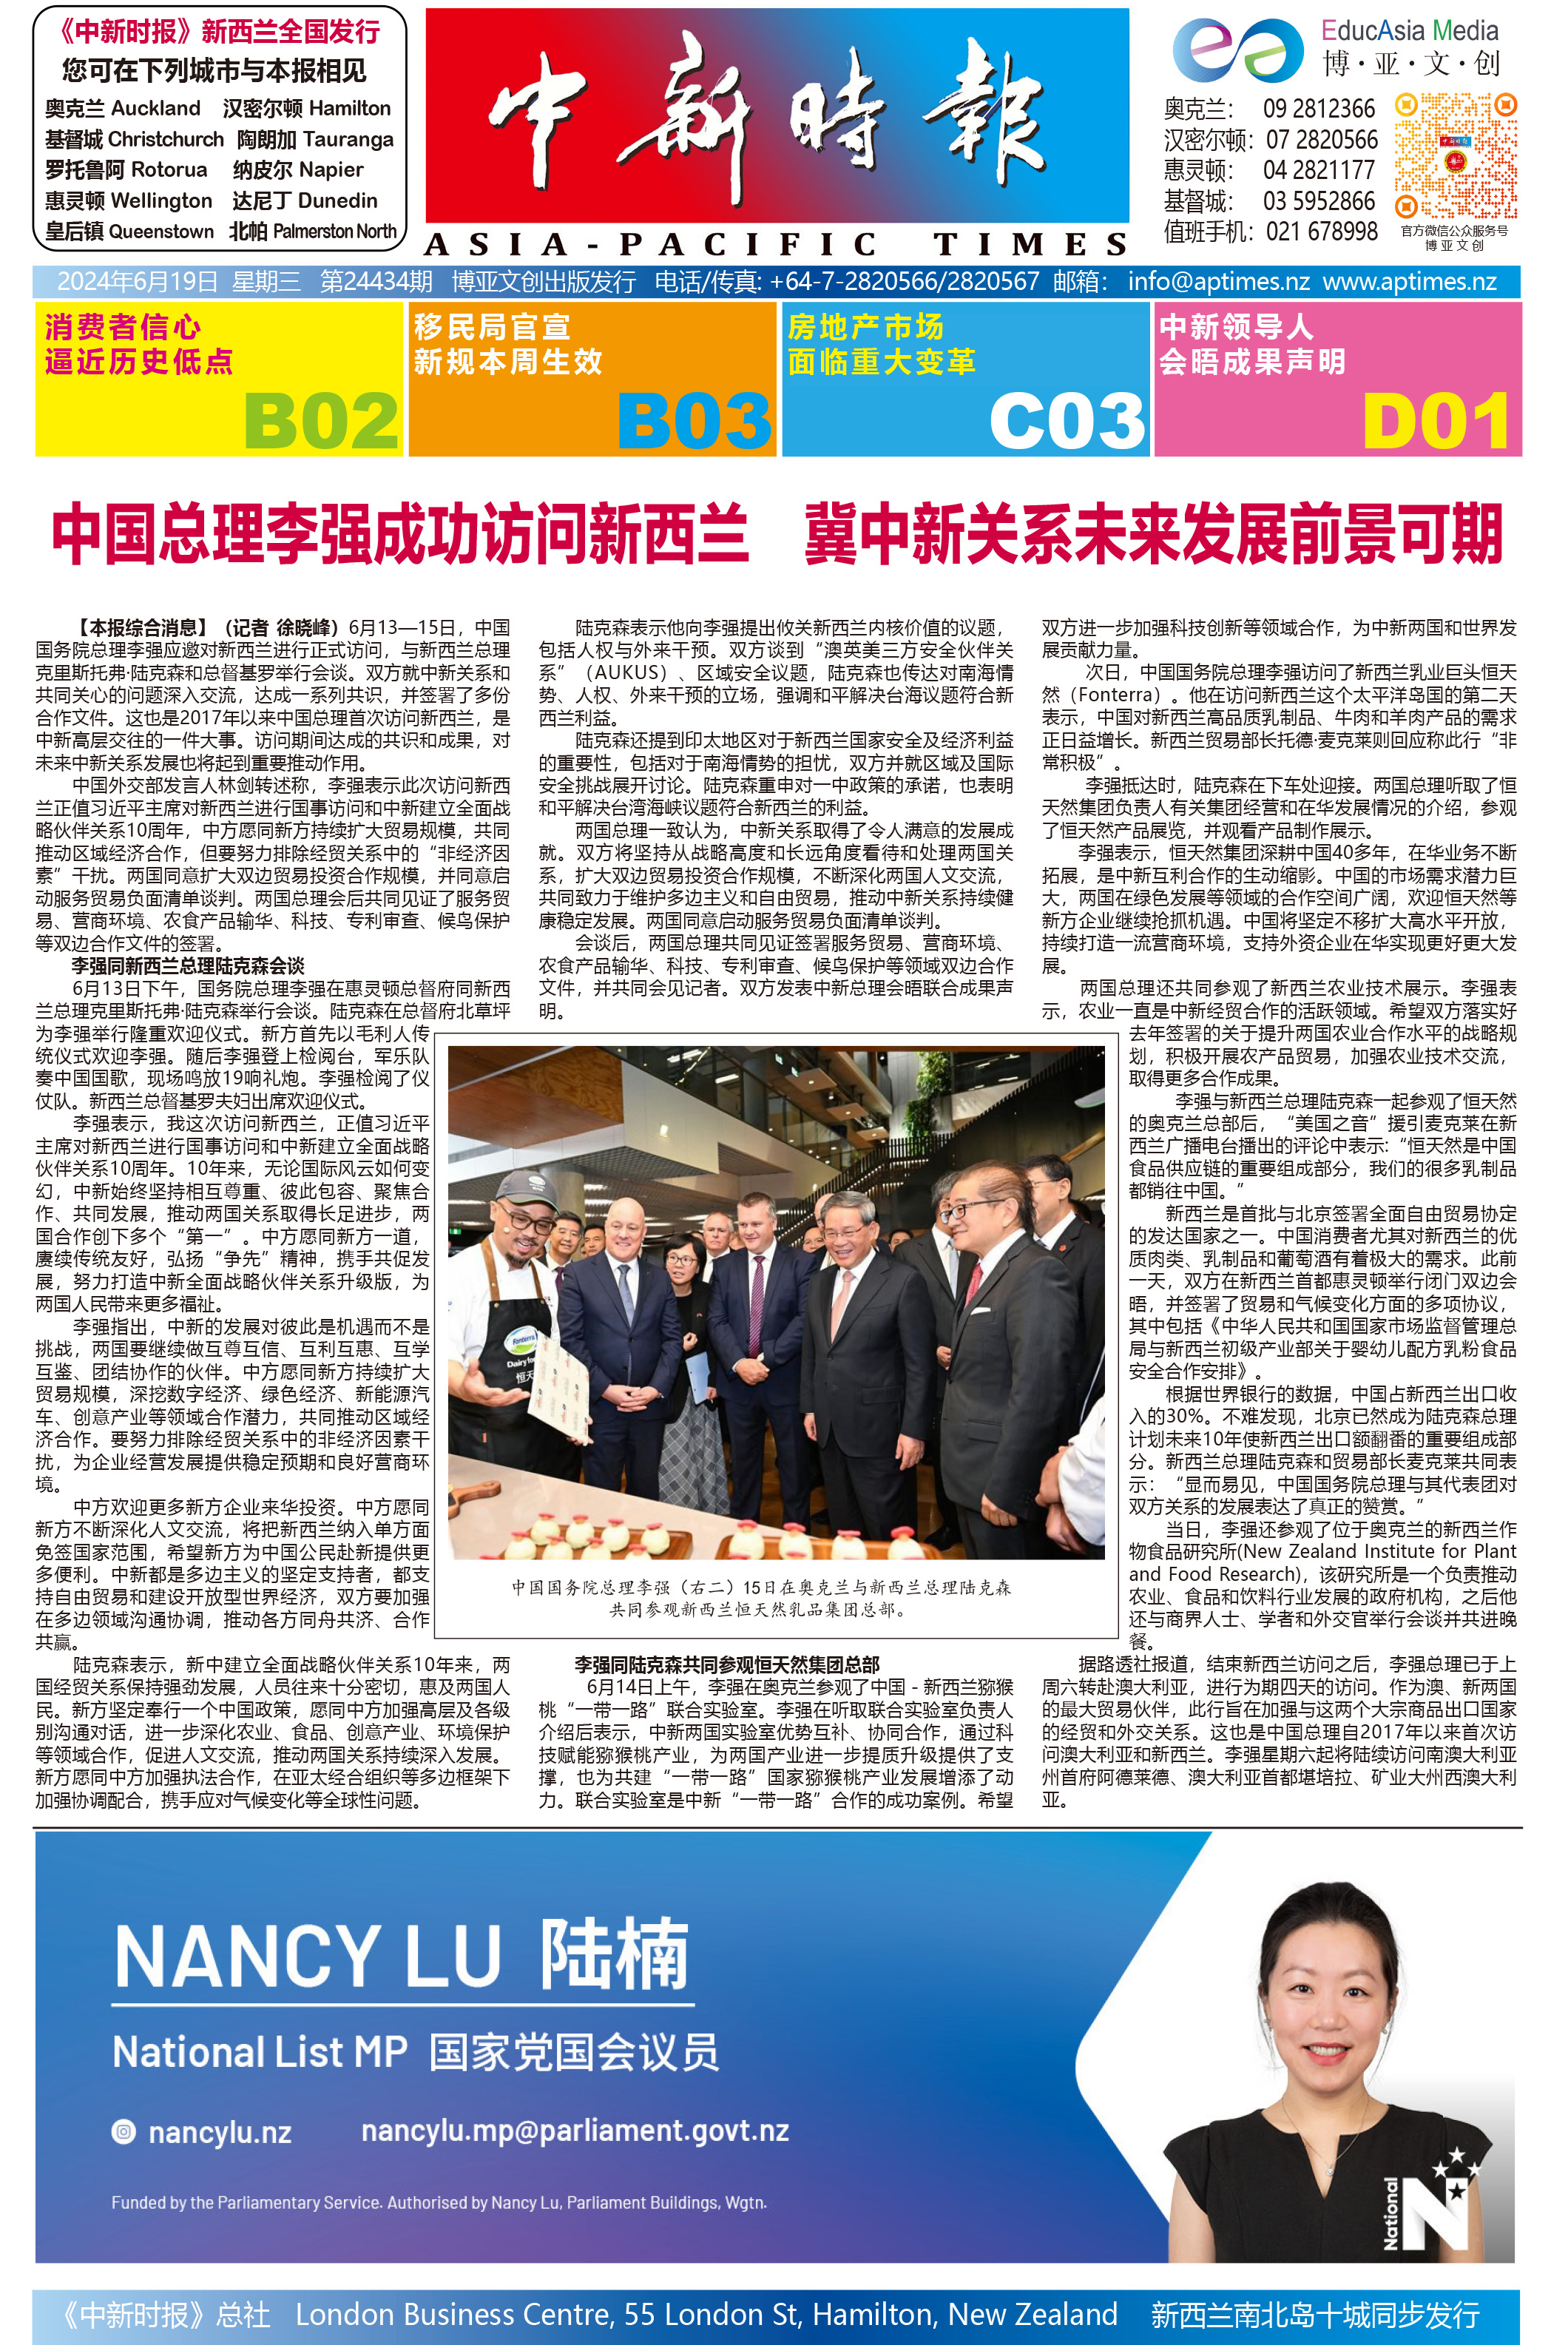 中国总理李强成功访问新西兰 助中新关系未来发展前景可期